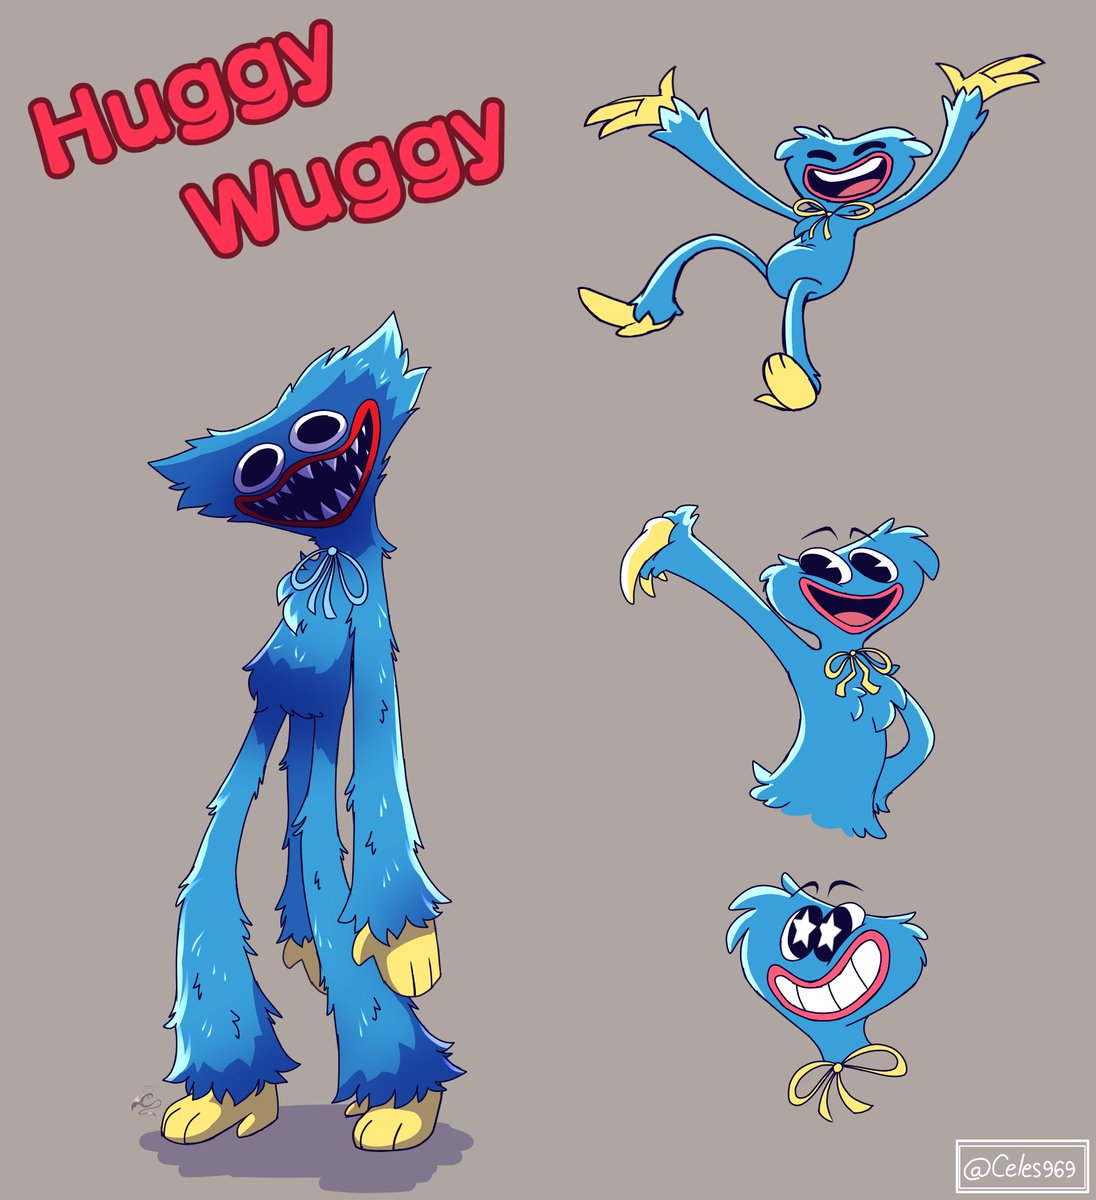 huggy wuggy (@1huggy_wuggy) / X